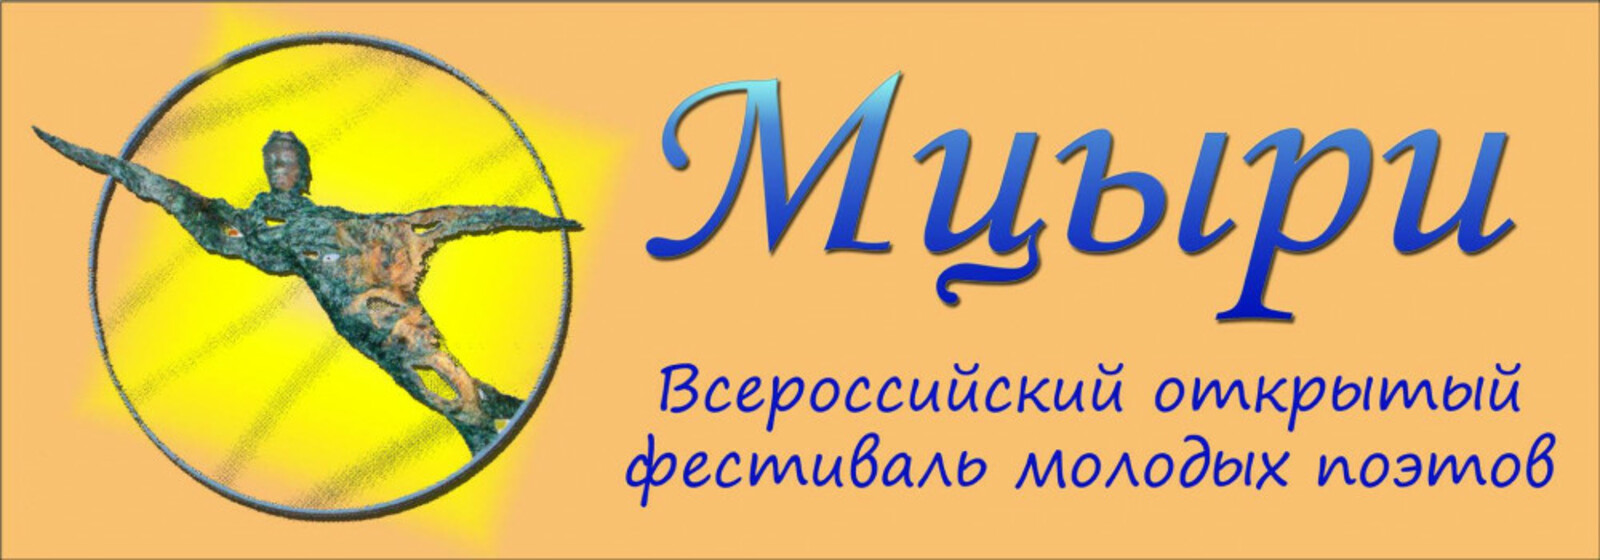 В Уфе состоится награждение победителей Всероссийского фестиваля молодых поэтов «Мцыри» и конкурса «Звенит струна души моей»